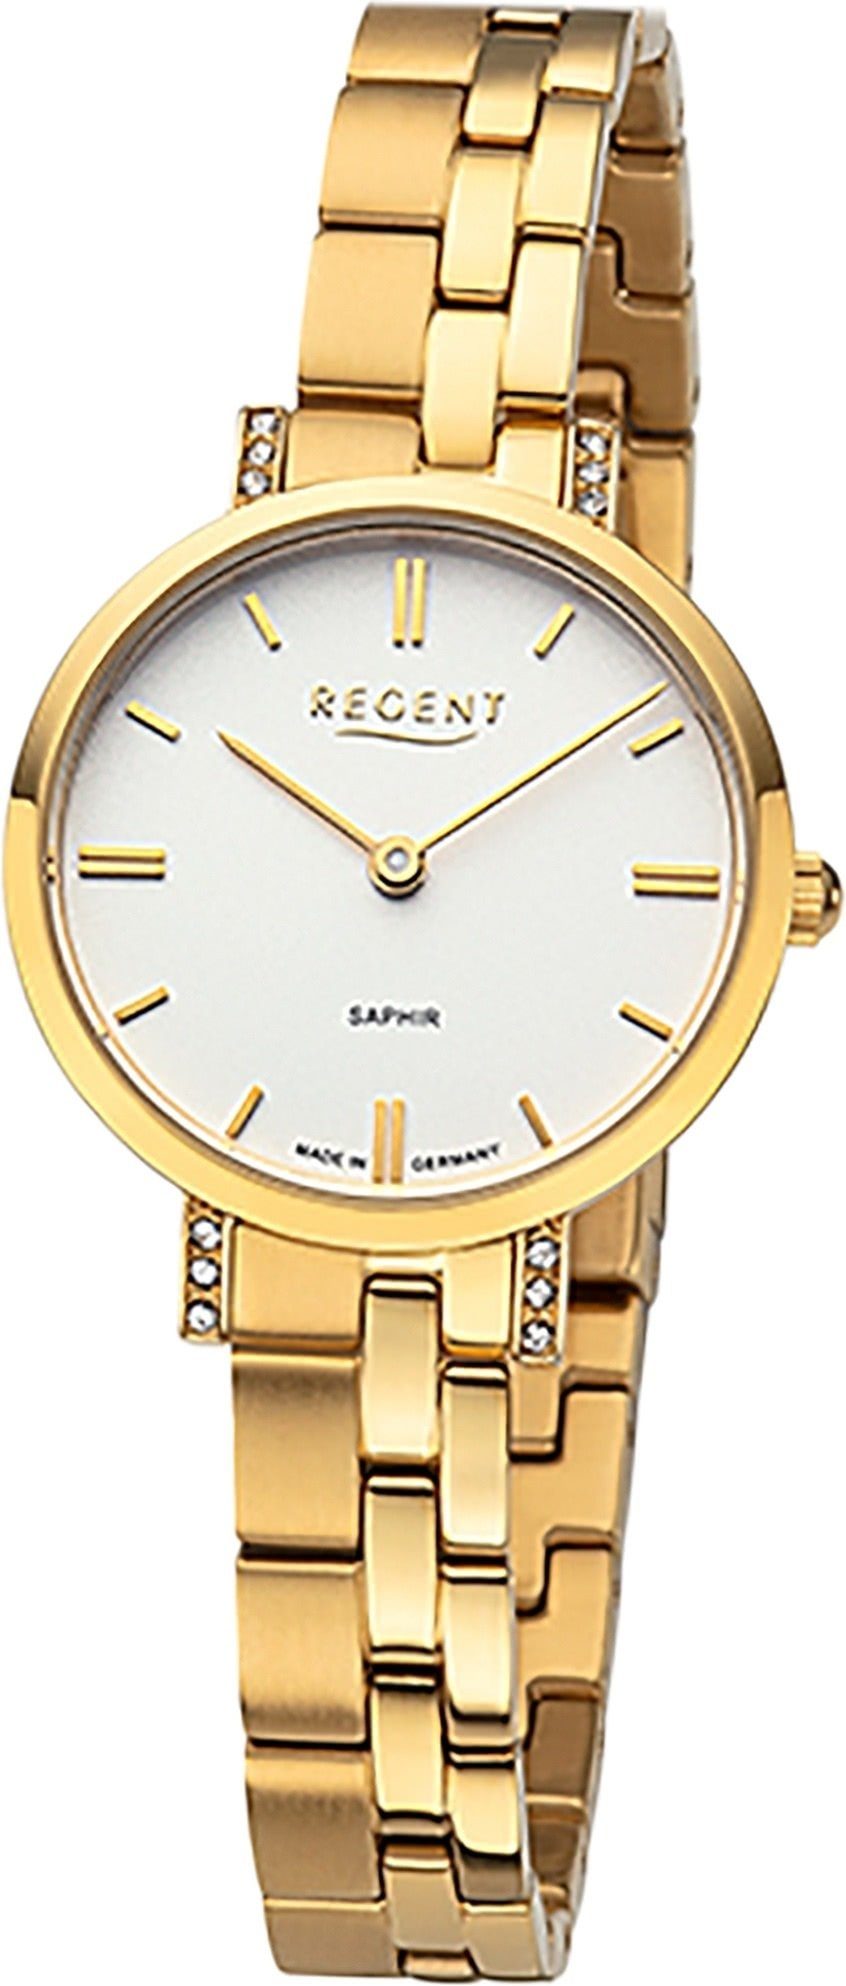 Armbanduhr Quarzuhr Analoganzeige, Damen Regent (ca. 28mm), Metallbandarmband Damen Armbanduhr Regent klein rund,